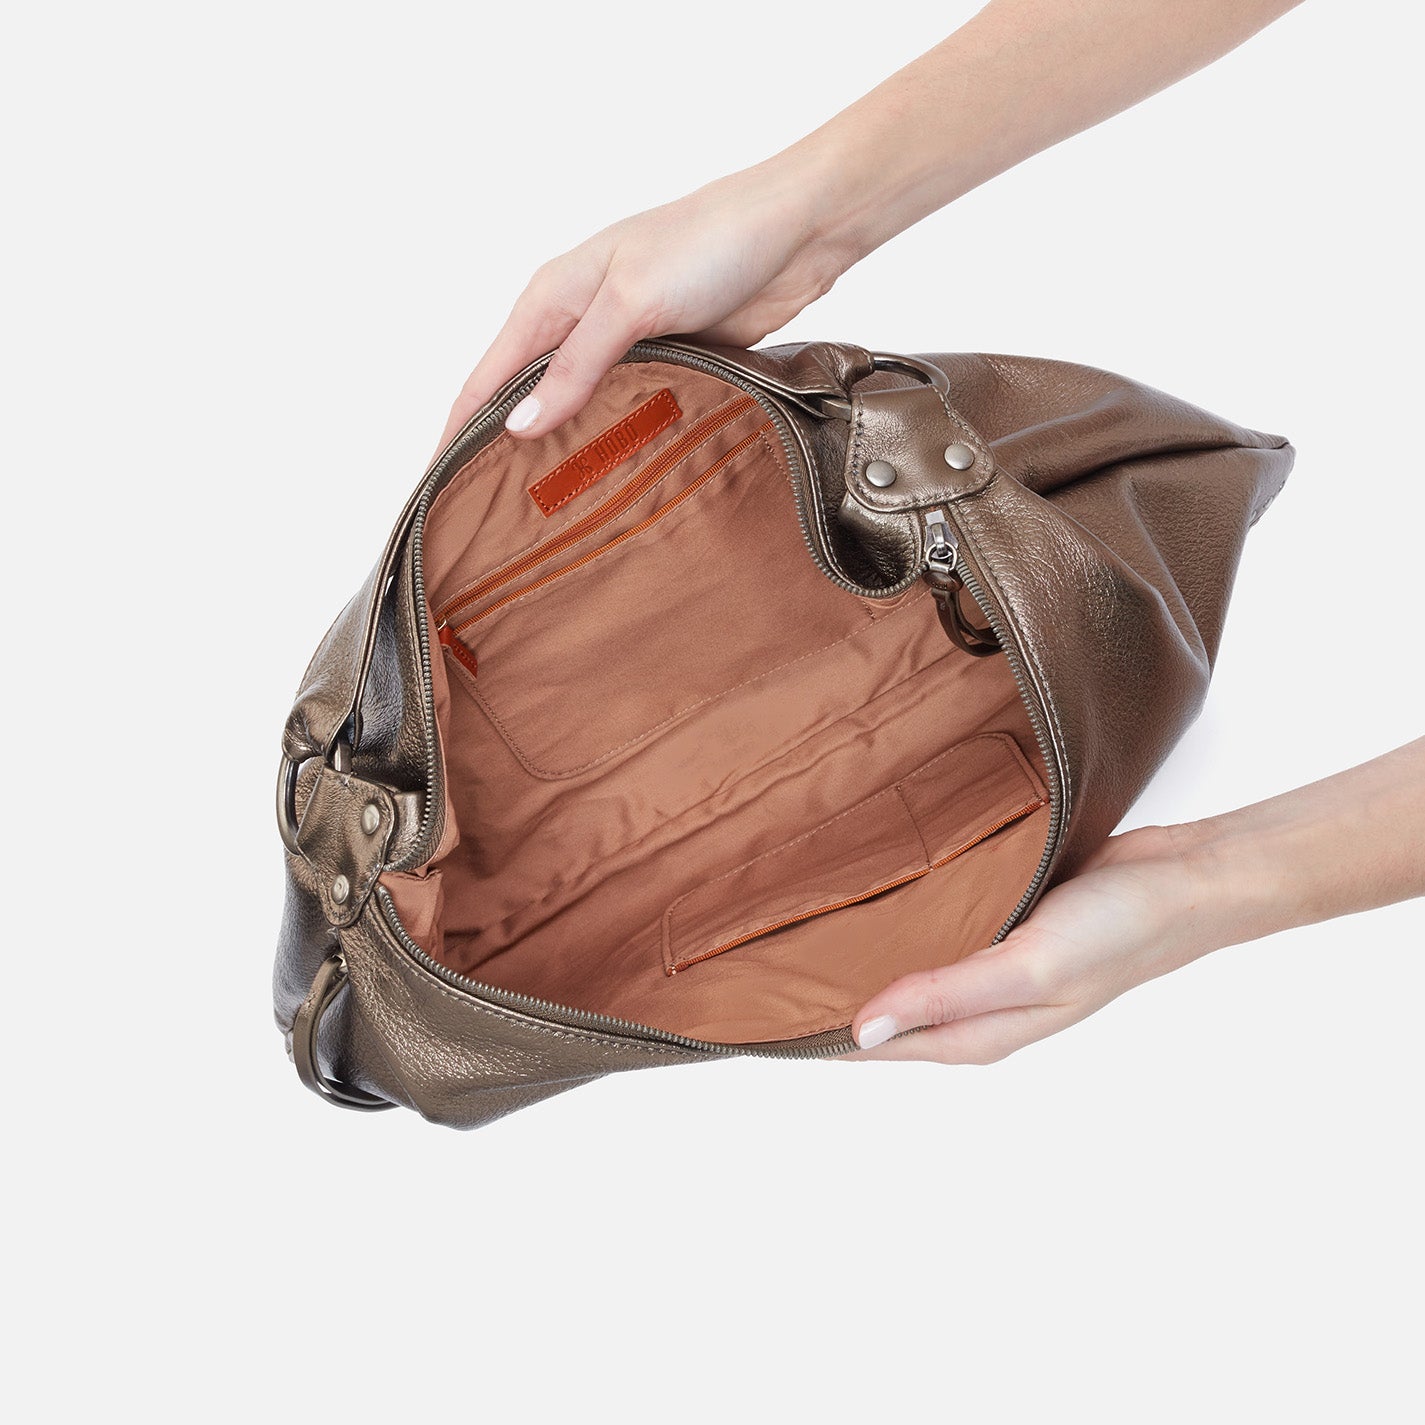 Pearl Studs Multi Color Leather Barrel Bag – doe a dear